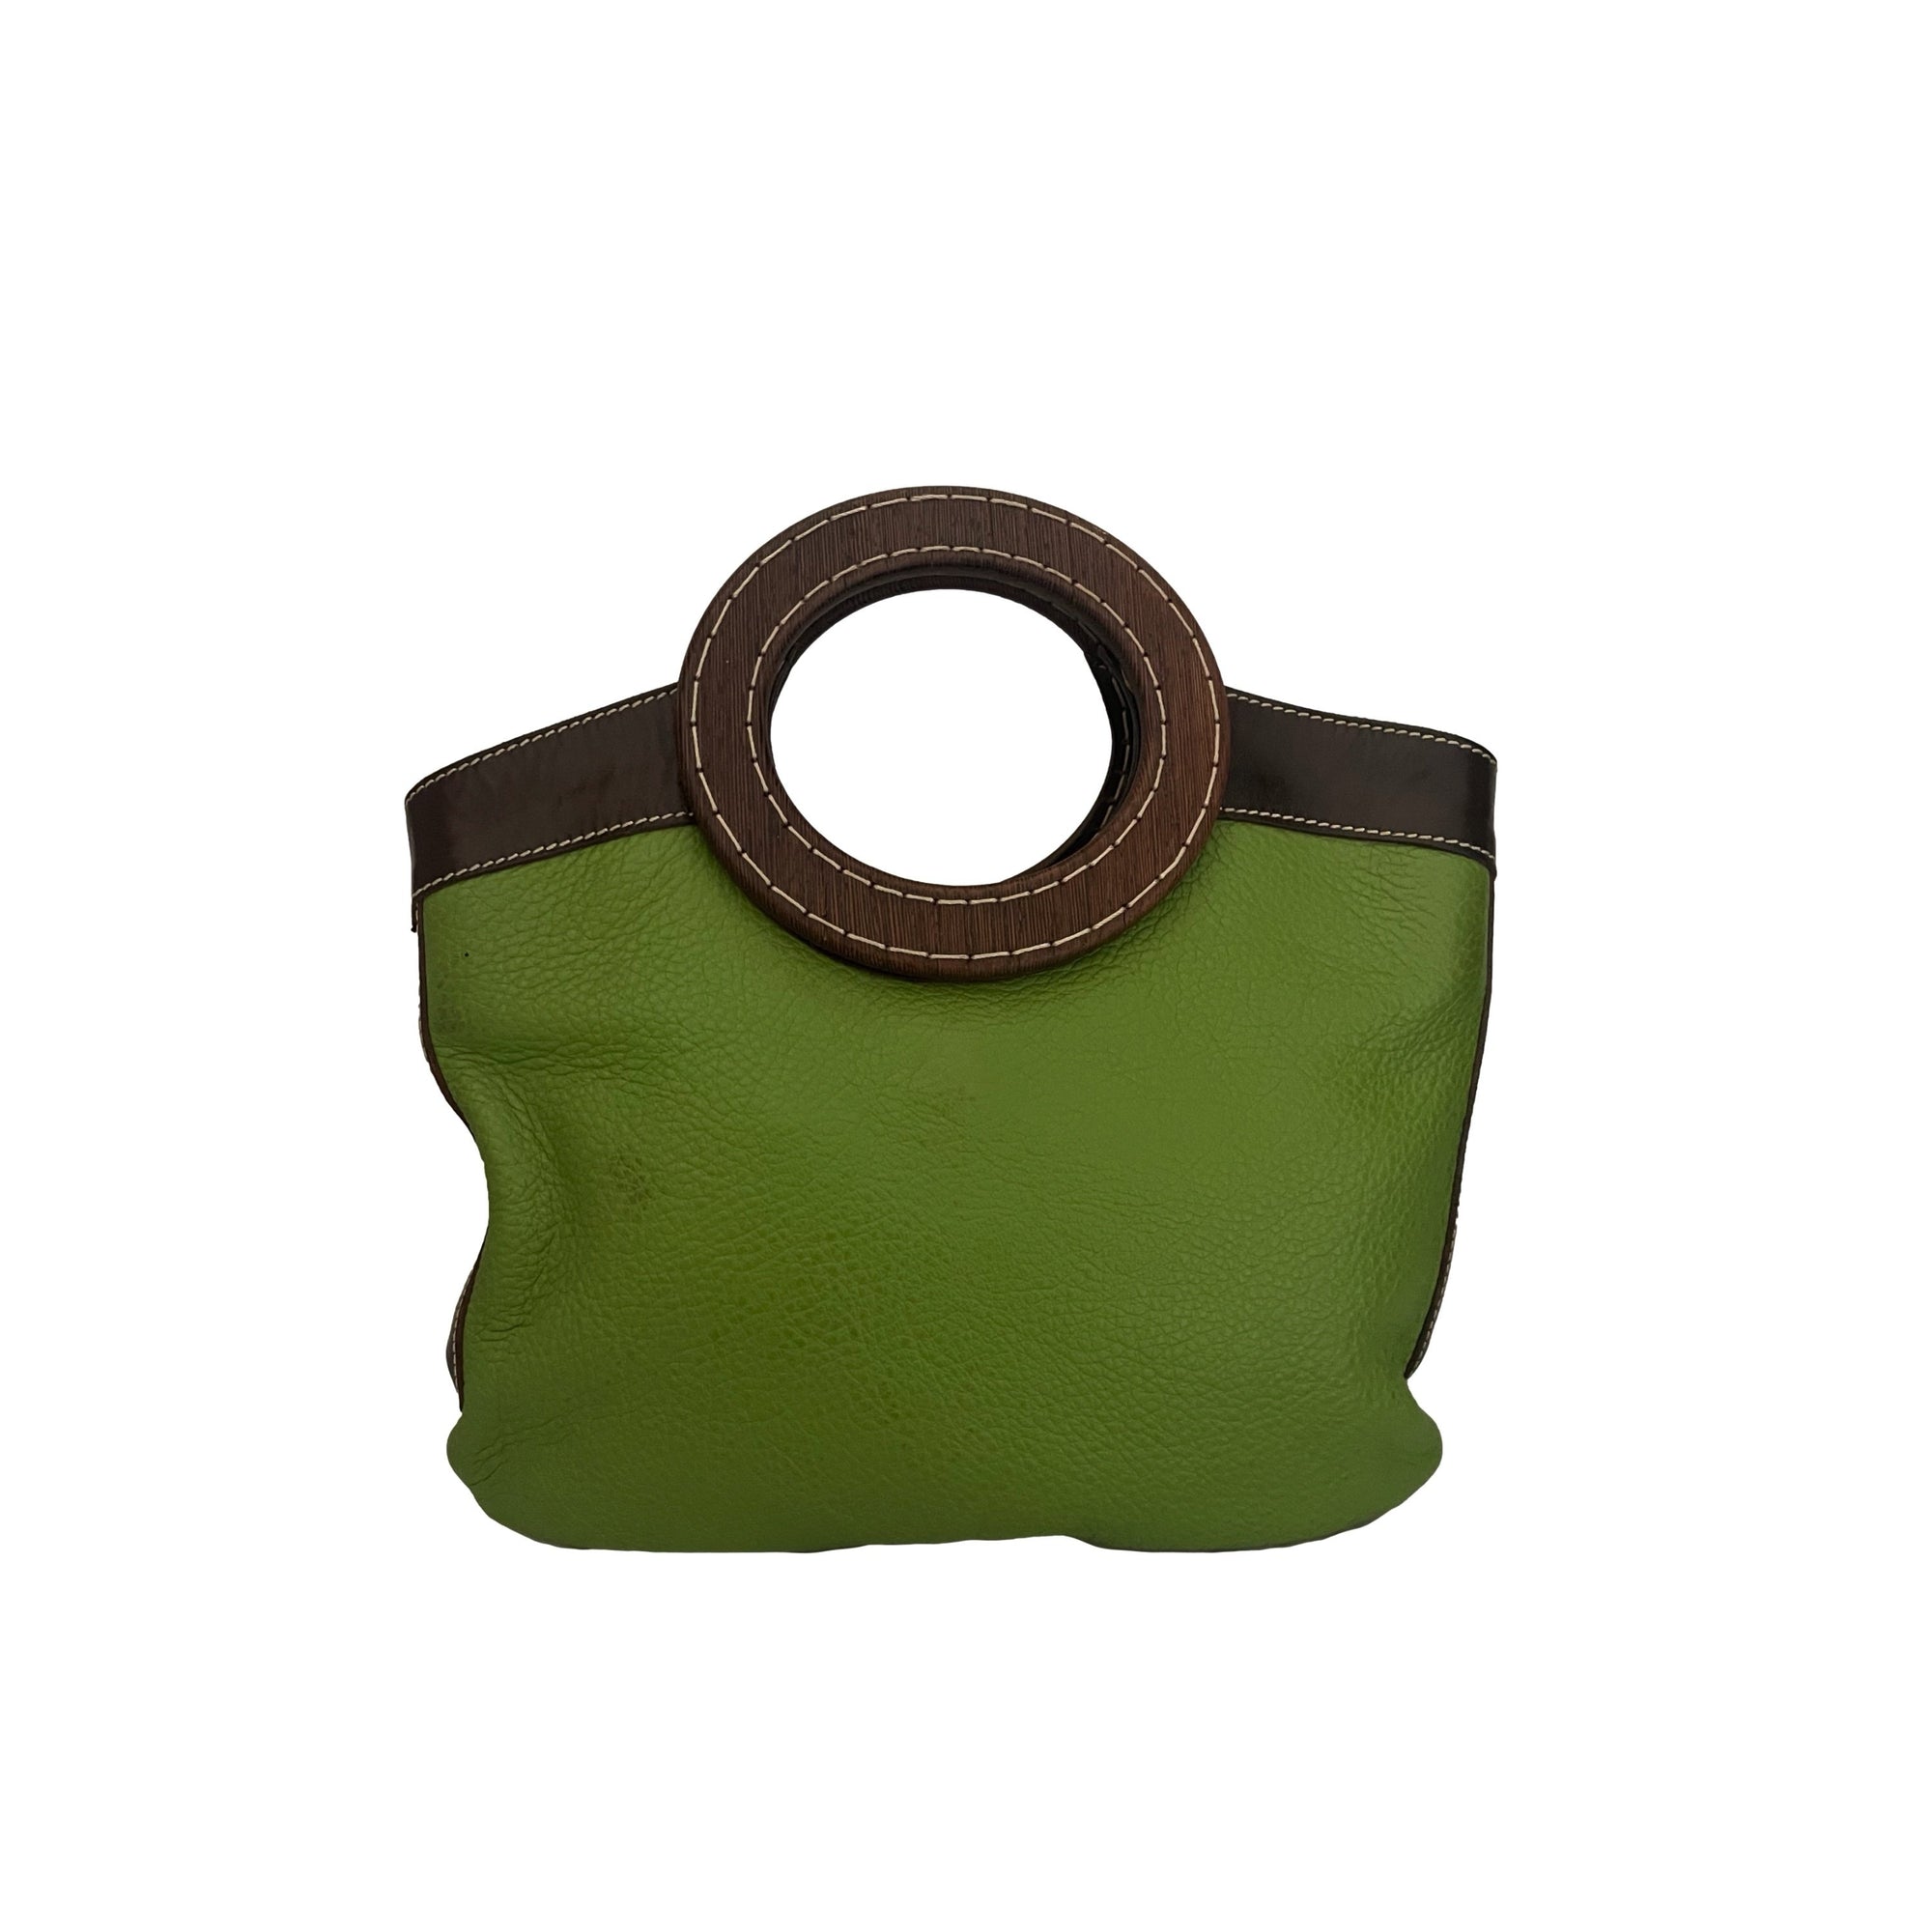 Miu Miu Green Top Handle Bag - Handbags